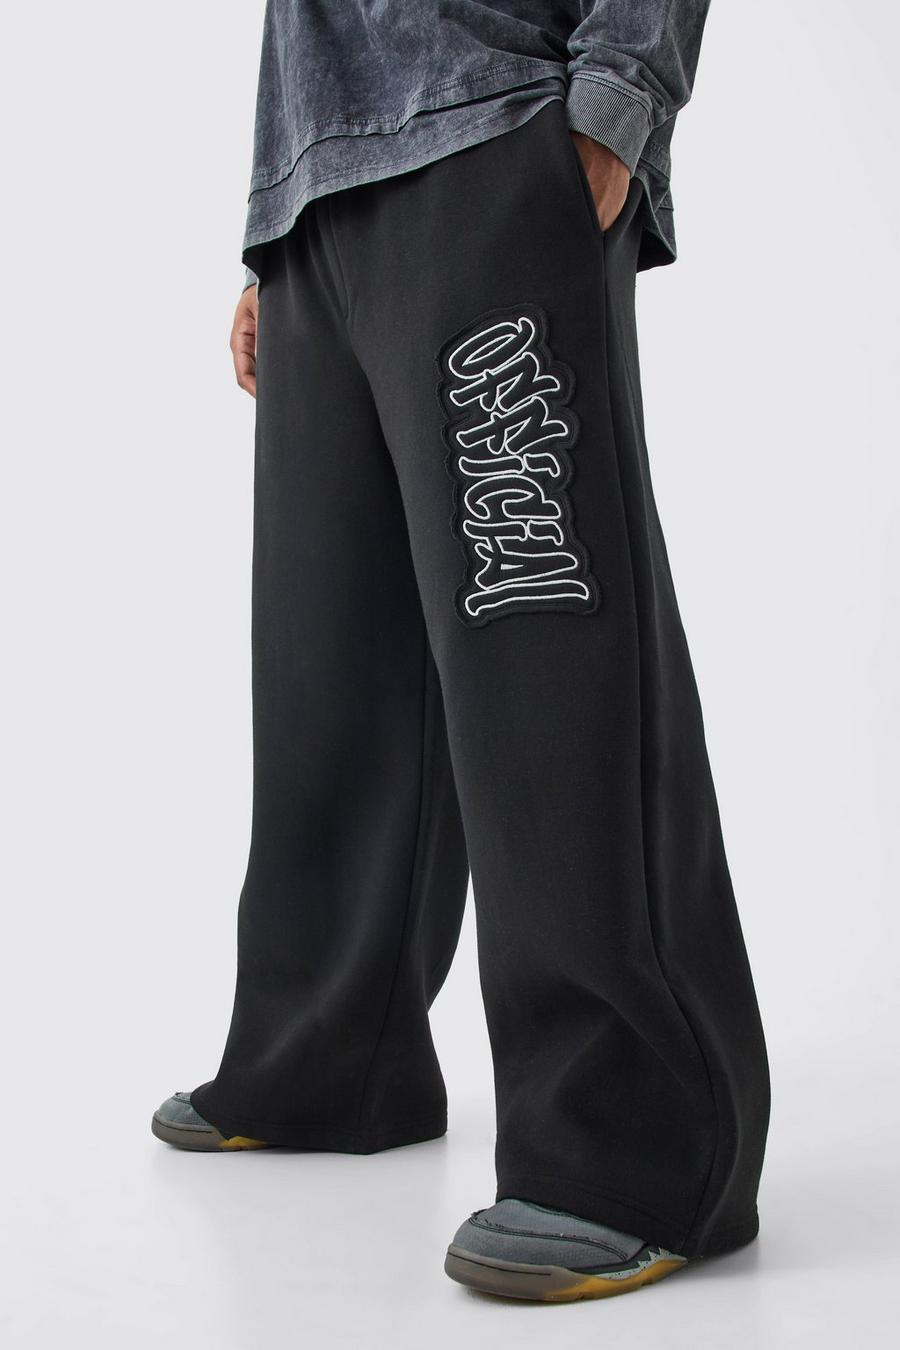 Pantaloni tuta Plus Size a calzata ampia Official con applique, Black